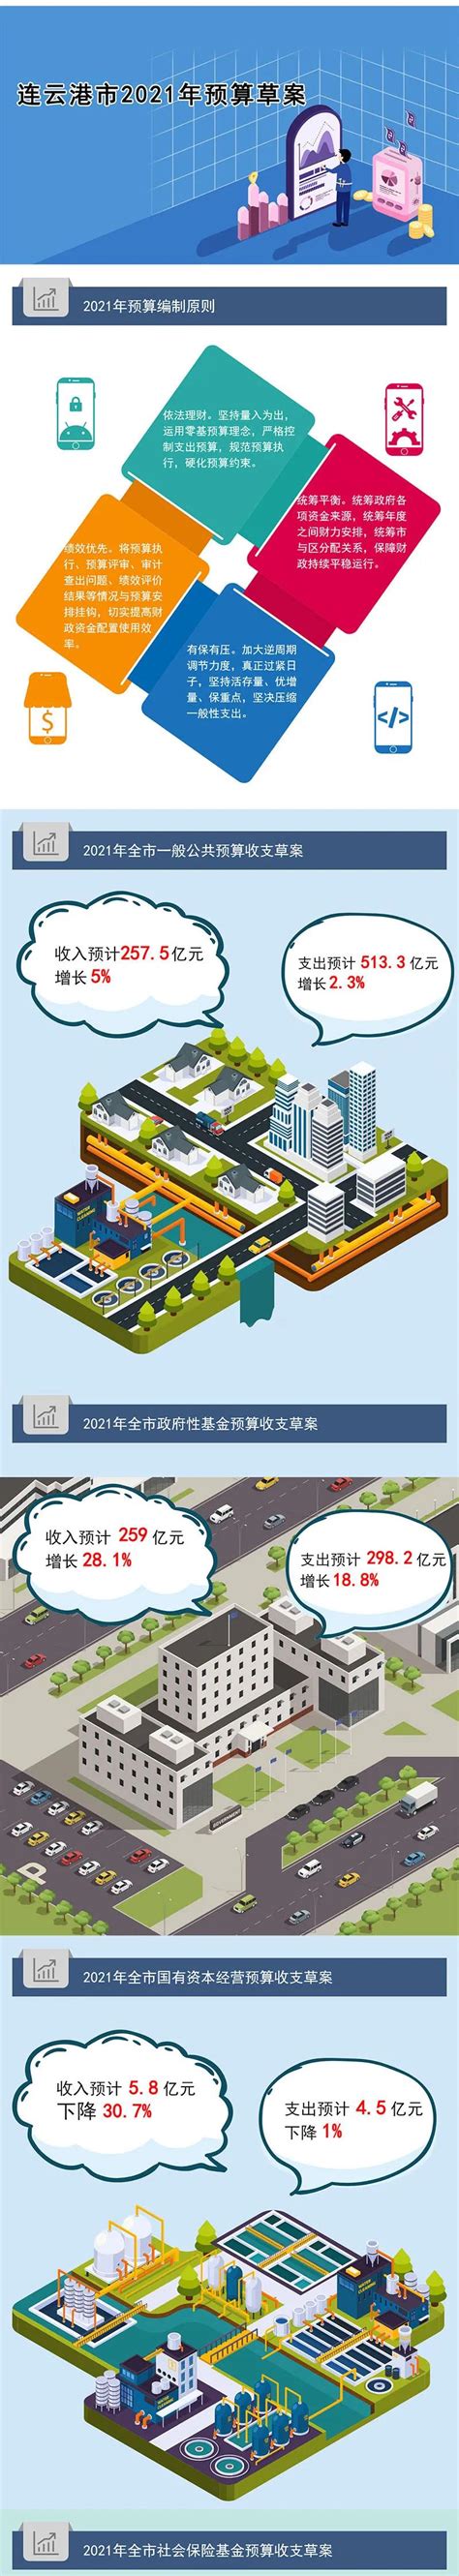 图 解-《连云港市2020年预算执行情况与2021年预算草案》解读